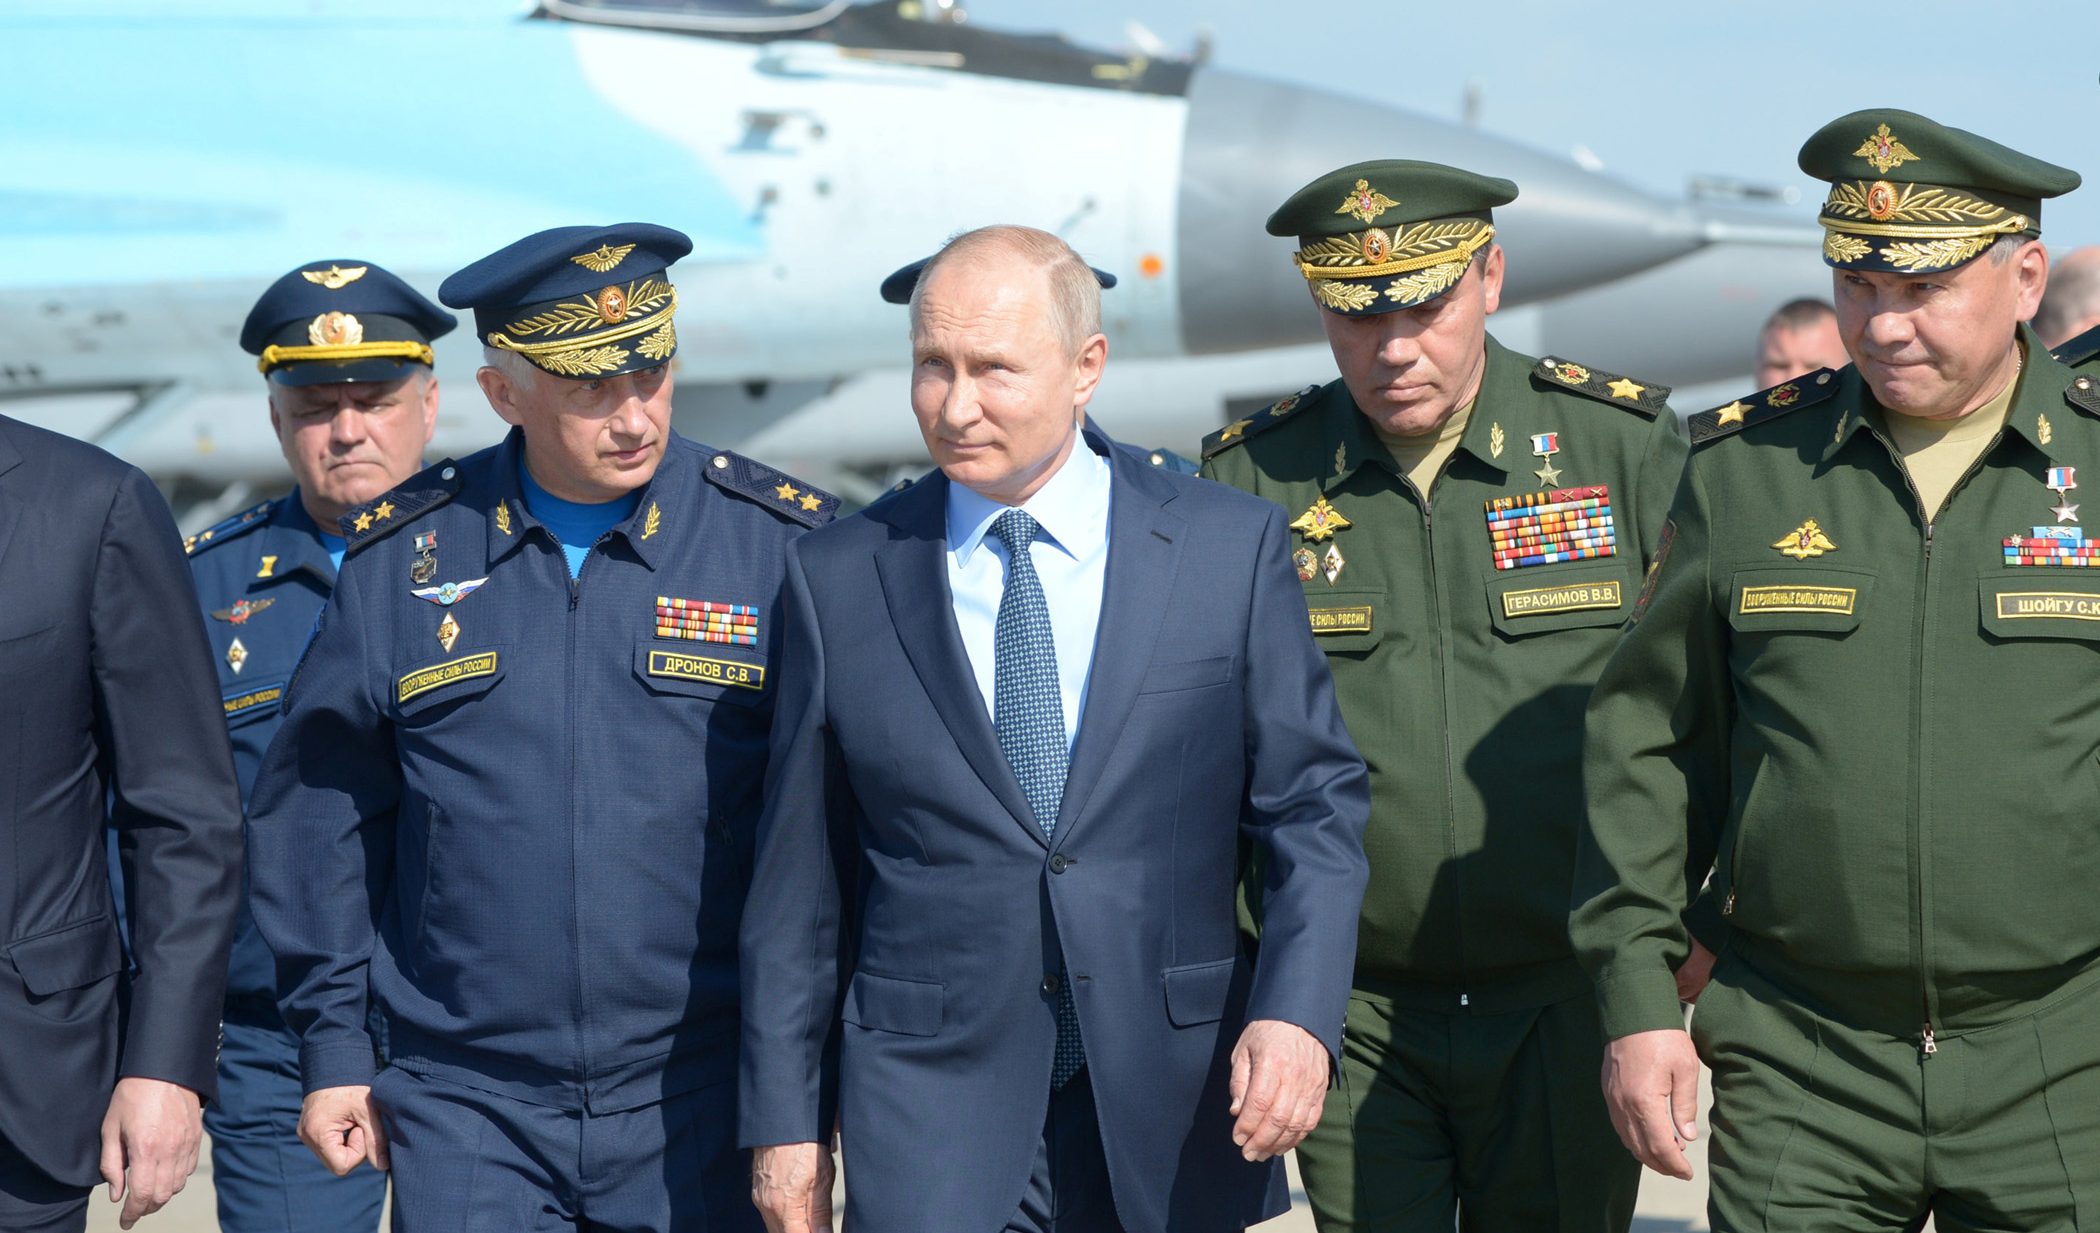 Il diplomatico: "Putin cerca di scatenare la fame in Africa per destabilizzare l'Europa con le migrazioni"